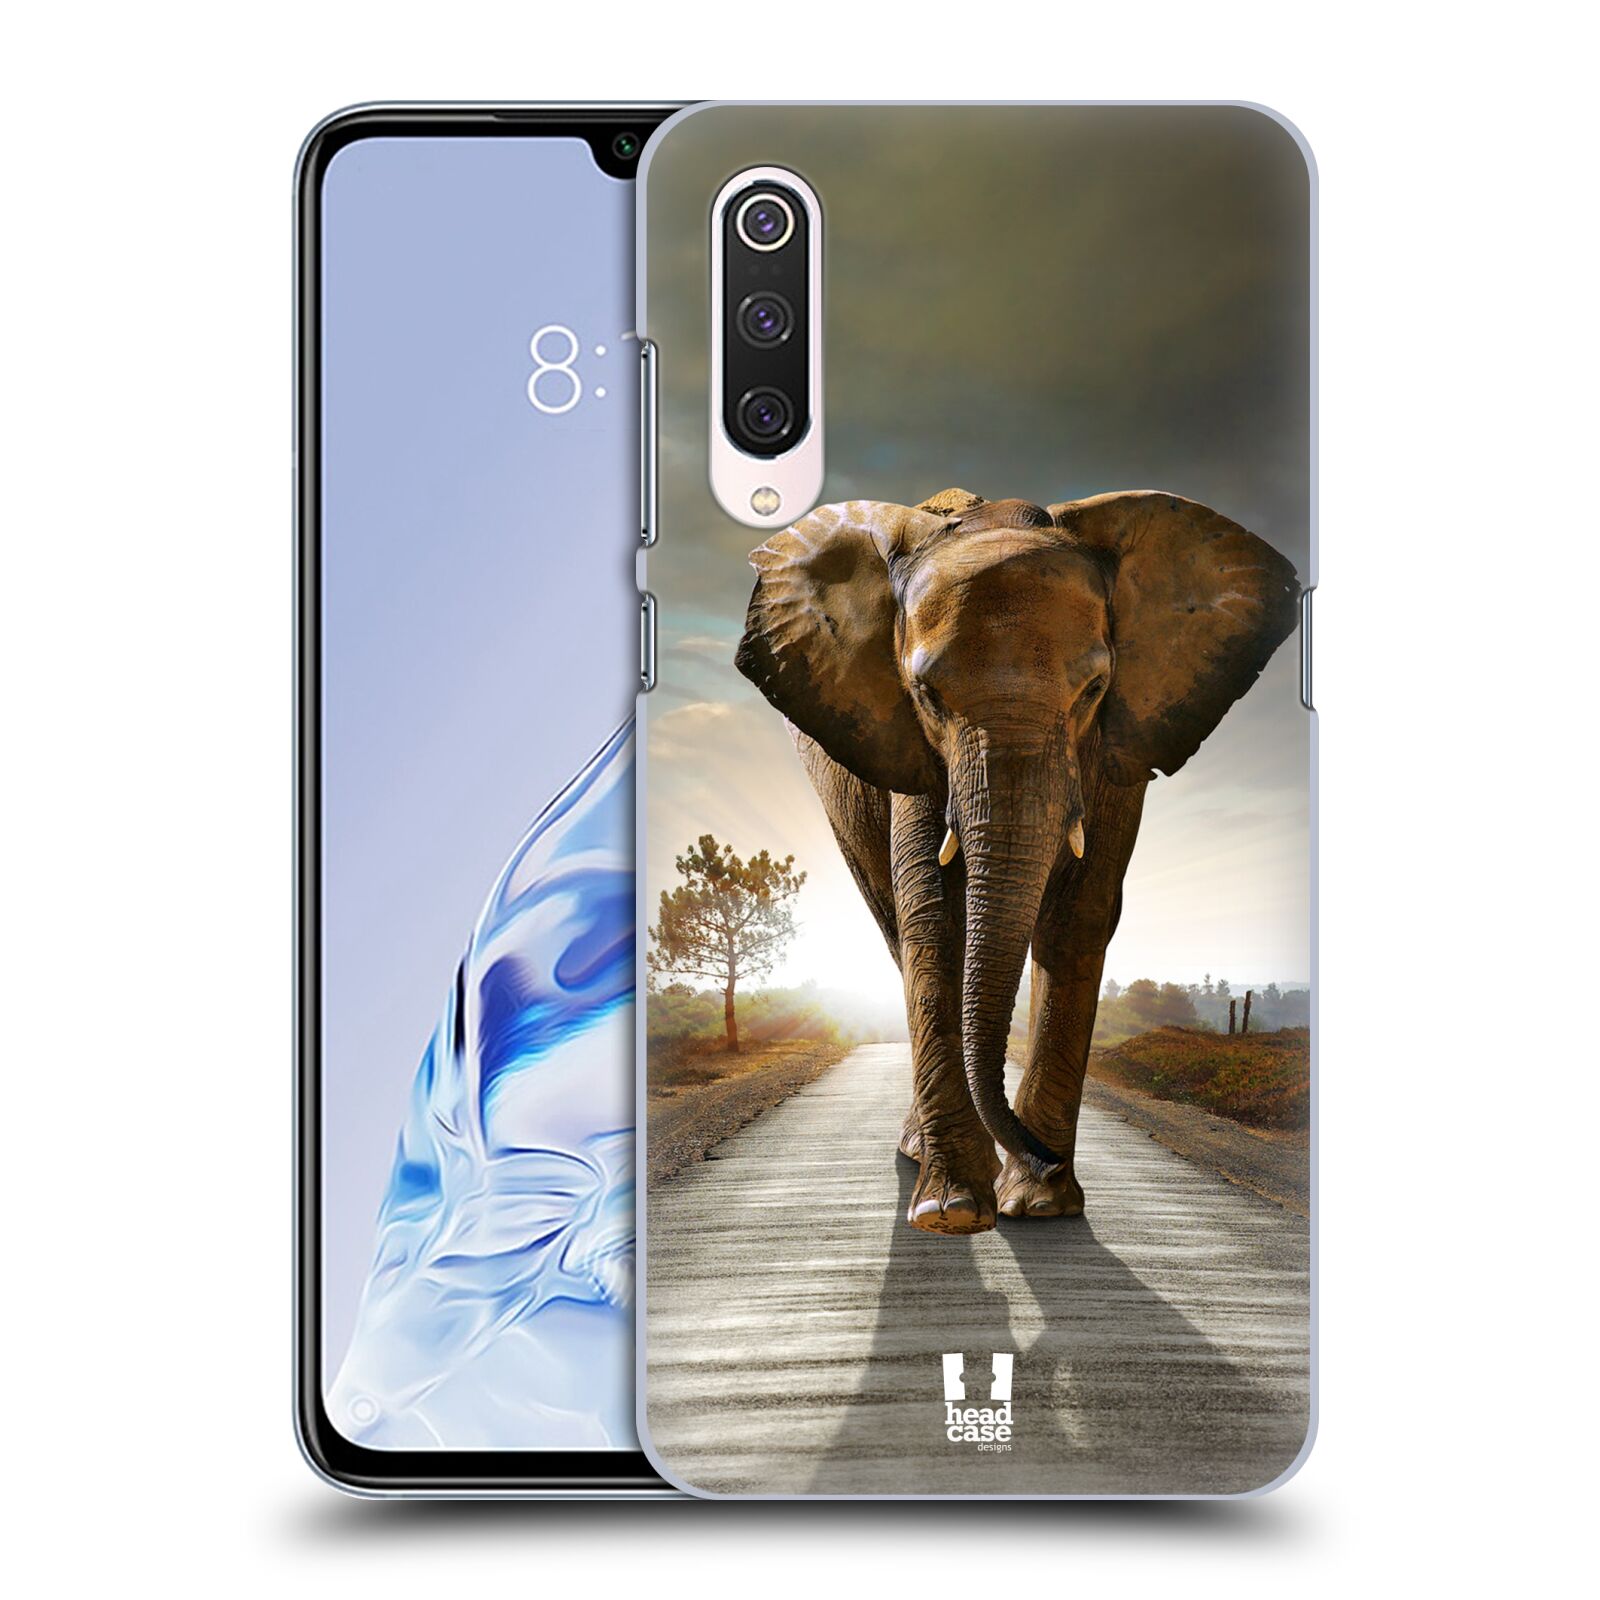 Zadní obal pro mobil Xiaomi Mi 9 PRO - HEAD CASE - Svět zvířat kráčející slon